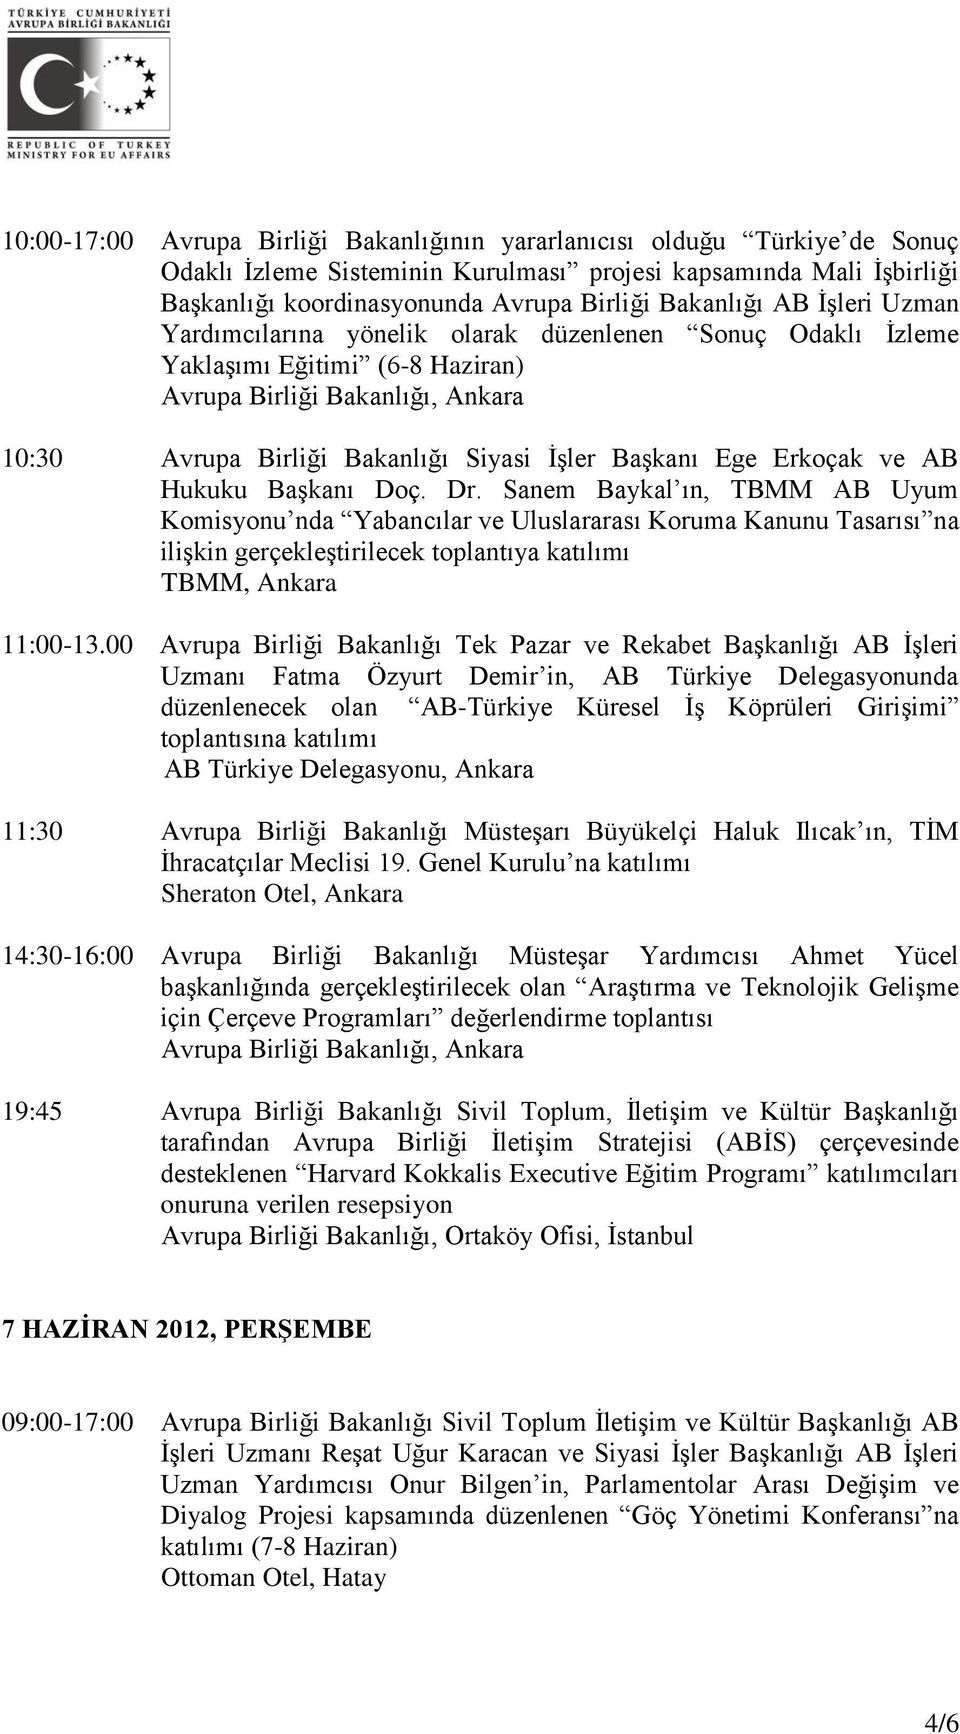 Dr. Sanem Baykal ın, TBMM AB Uyum Komisyonu nda Yabancılar ve Uluslararası Koruma Kanunu Tasarısı na ilişkin gerçekleştirilecek toplantıya katılımı TBMM, Ankara 11:00-13.